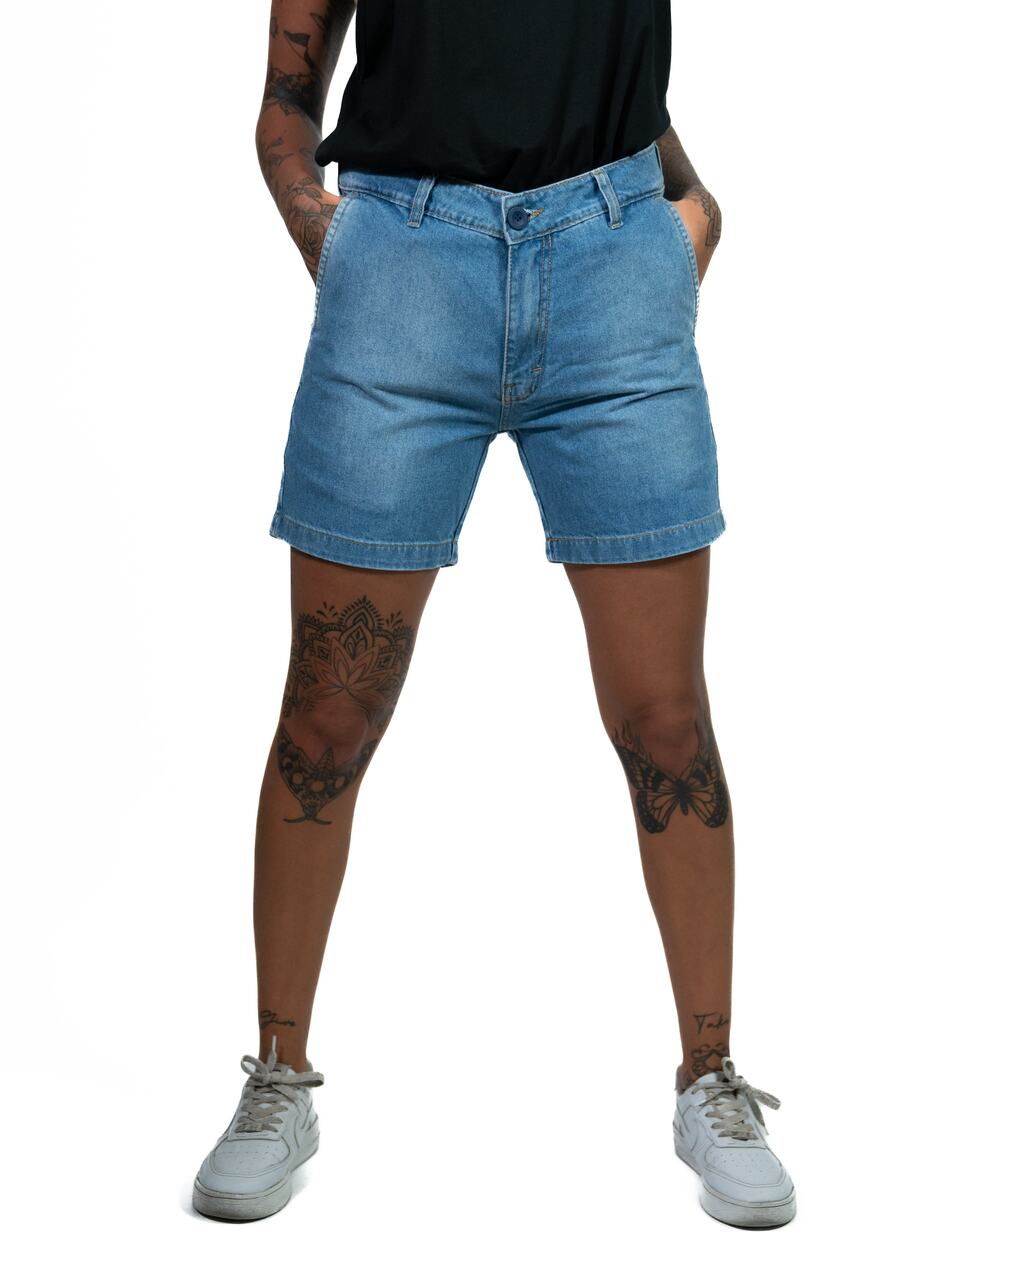 Shorts - Ropa - Hombre